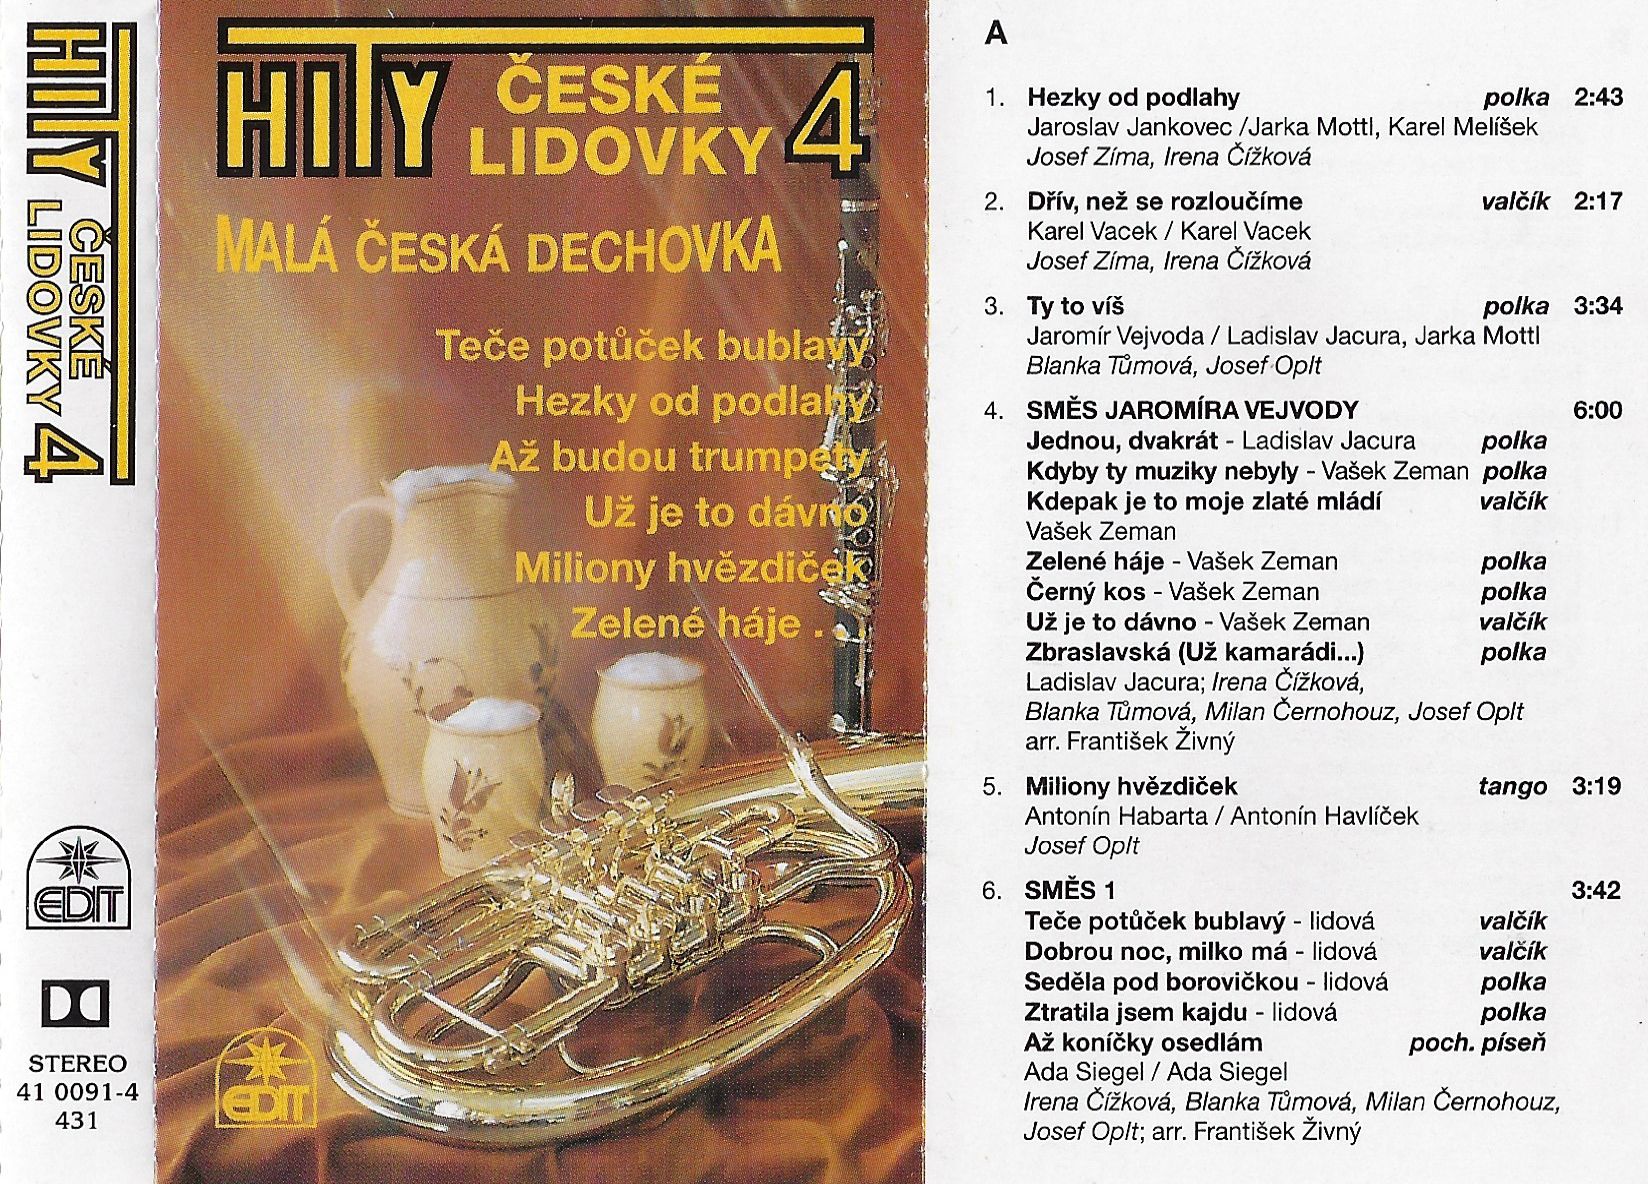 MC - Hity české lidovky 4